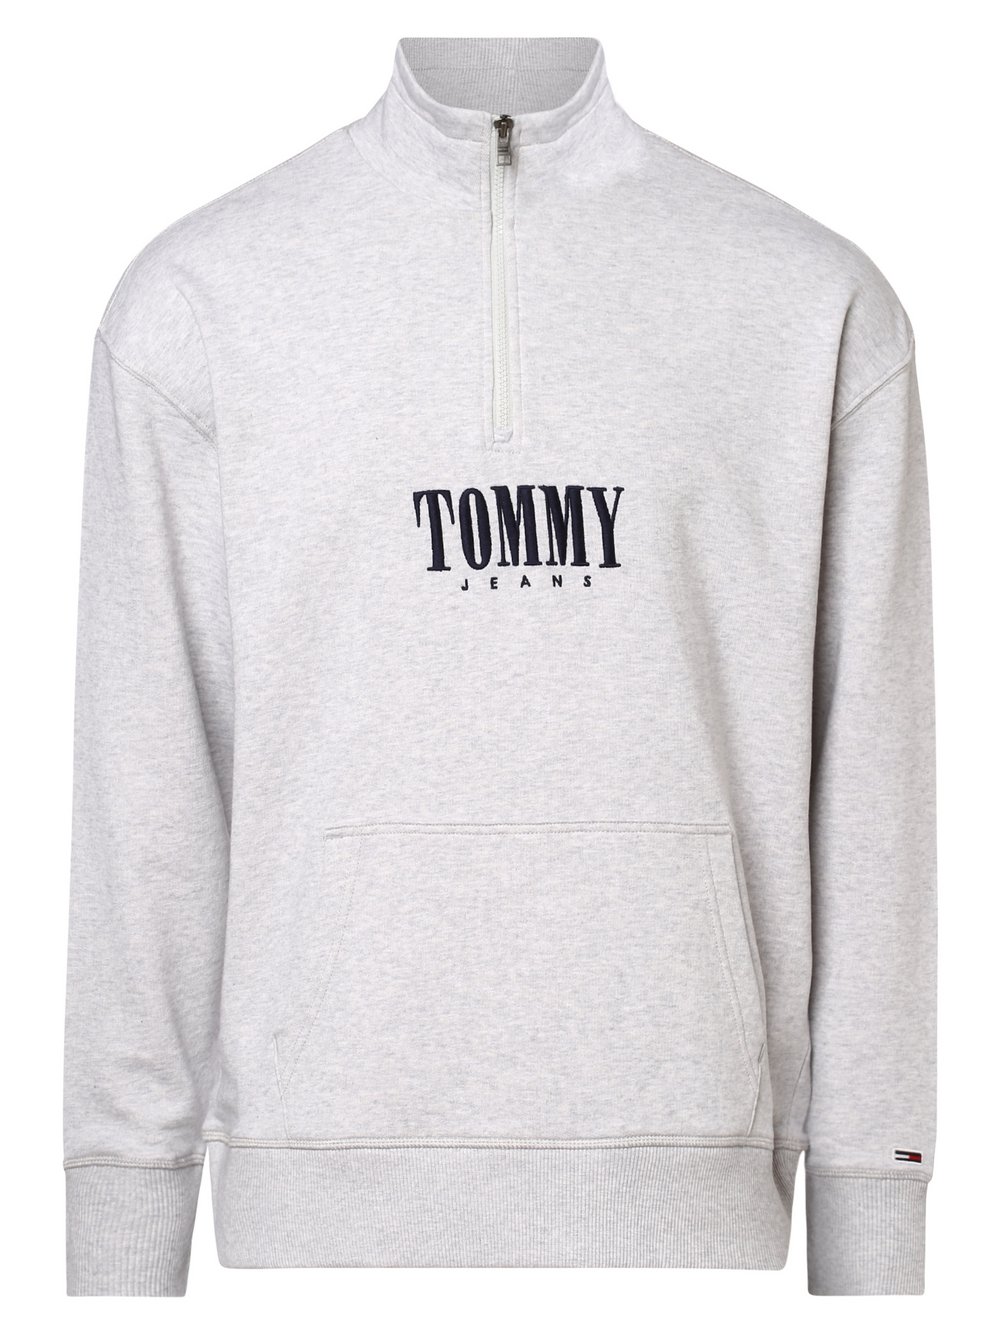 Tommy Jeans - Męska bluza nierozpinana, szary